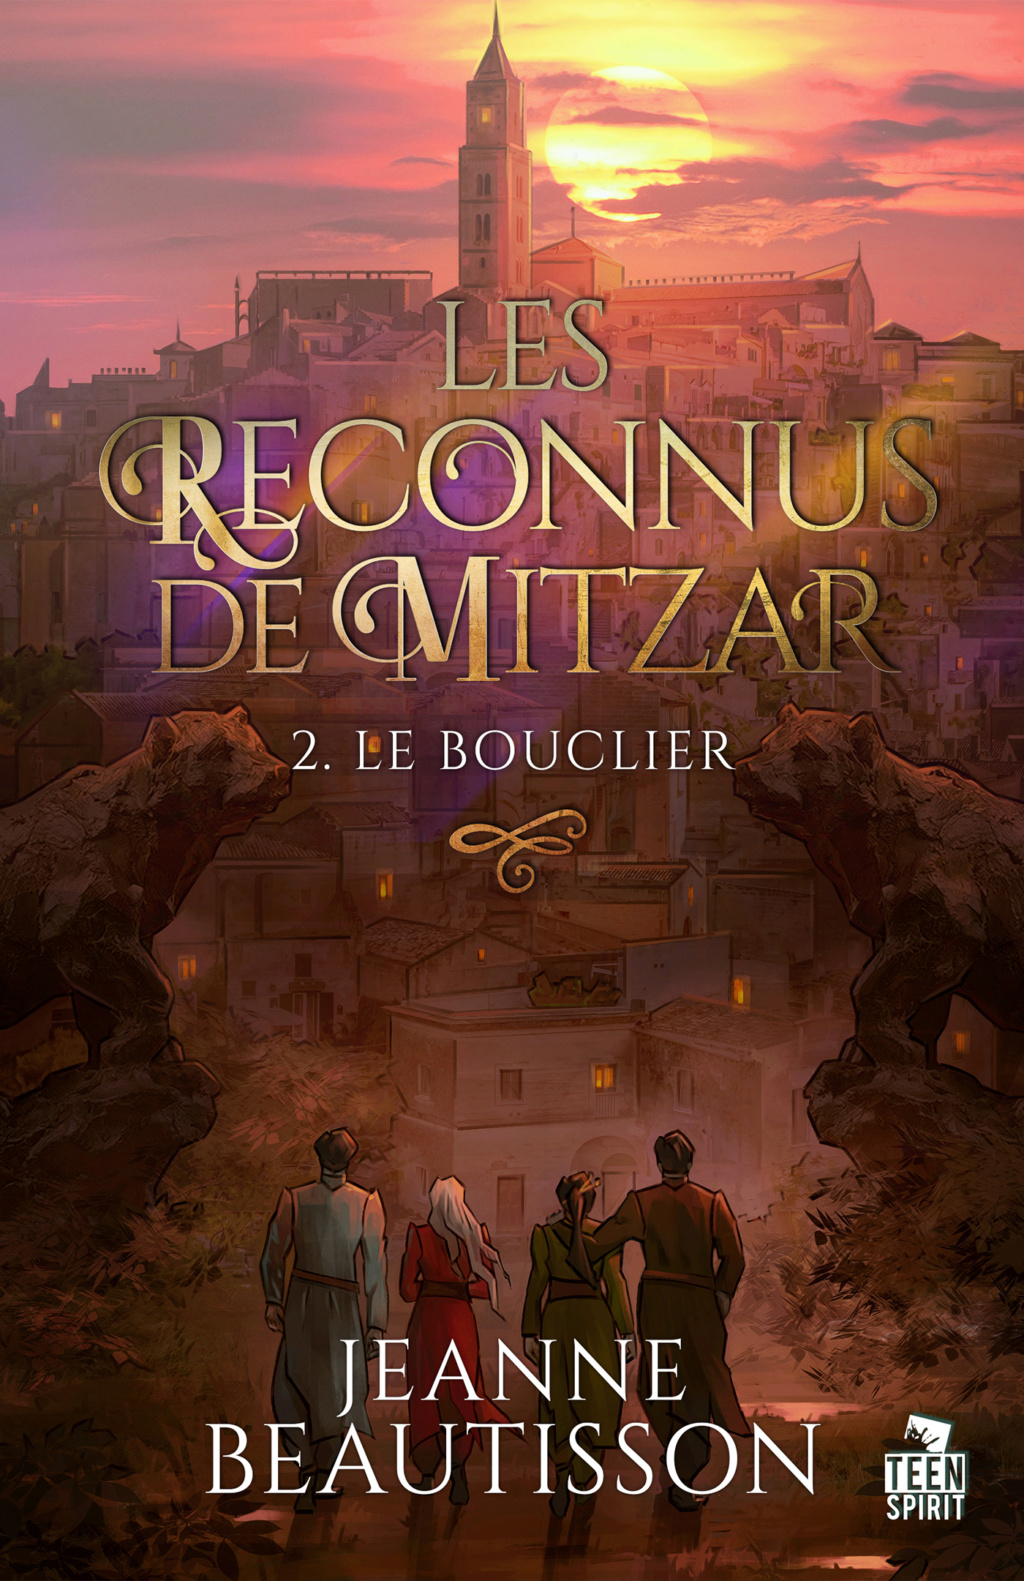 Les Reconnus de Mitzar - Tome 2 : Le bouclier de Jeanne Beautisson Les-re11